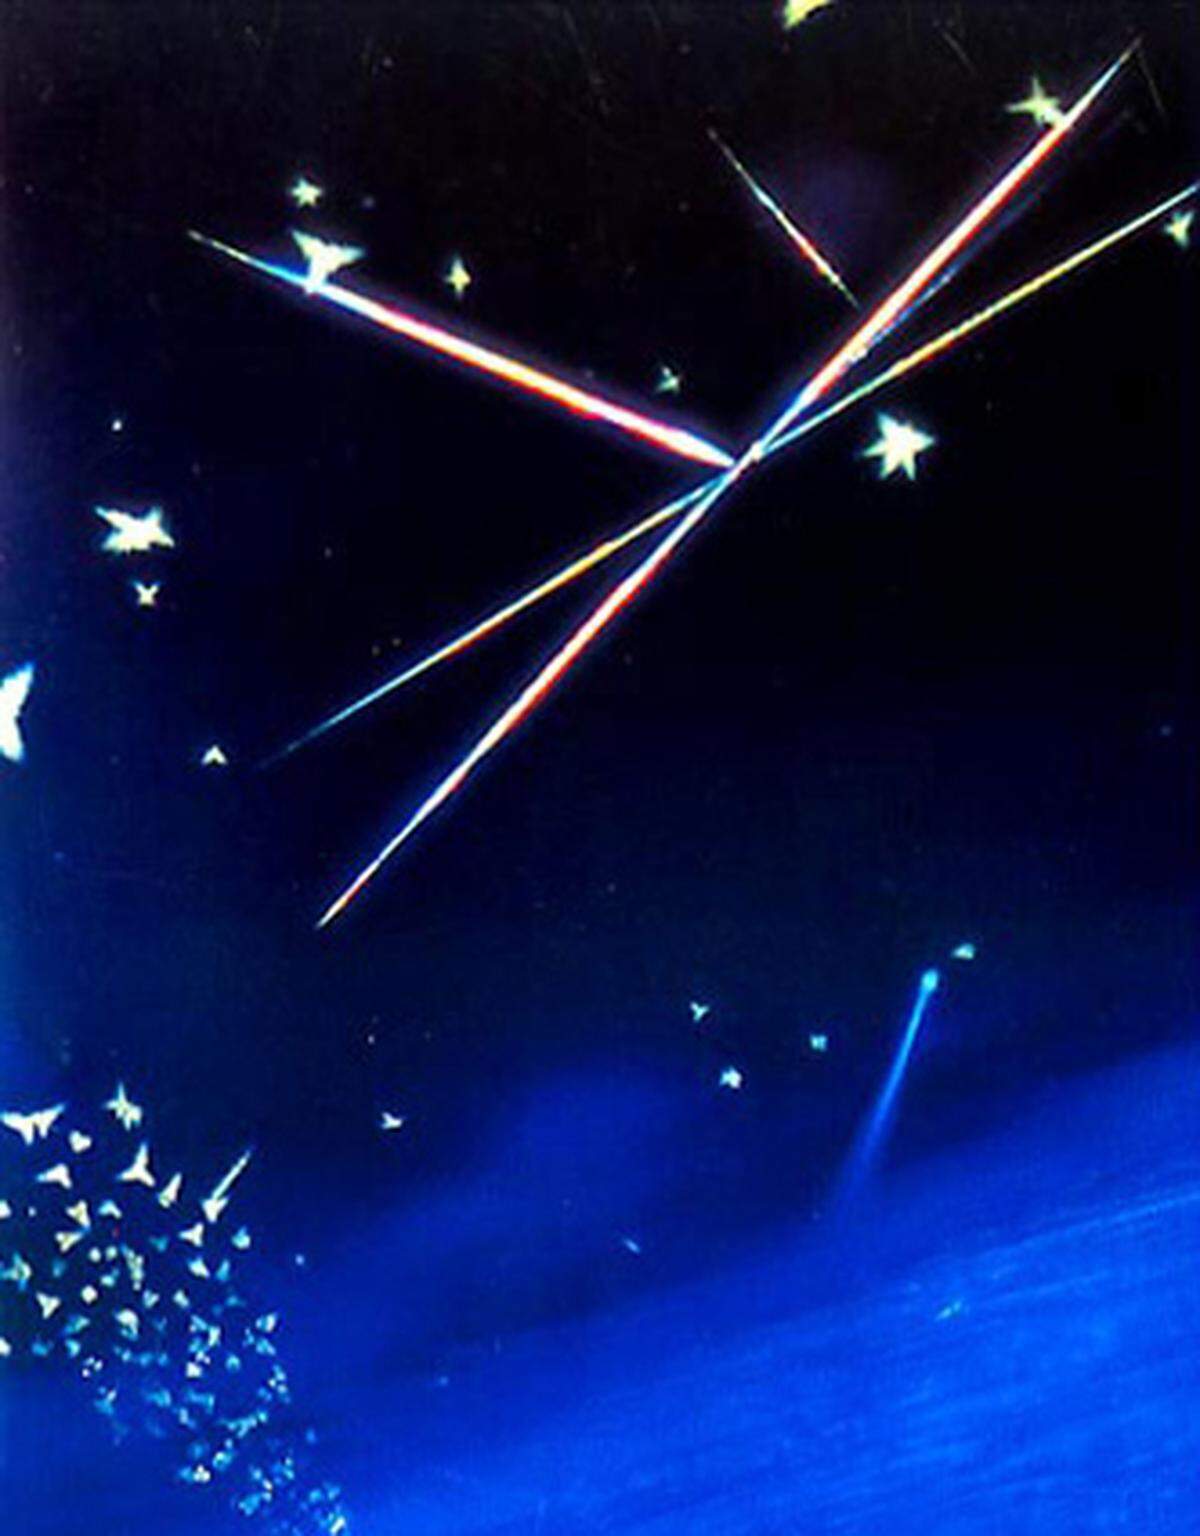 Das allererste Mal veranstaltete Nikon den Bewerb im Jahr 1977. Bereits damals gab es erstaunliche Aufnahmen zu sehen. Dieses Bild zeigt Rutil- und Tridymit-Kristalle in einem Kobalt-haltigen Glas, aufgenommen mit 350-facher Vergrößerung.  Fotograf: James W. Smith, Independence (Ohio, USA), 1977